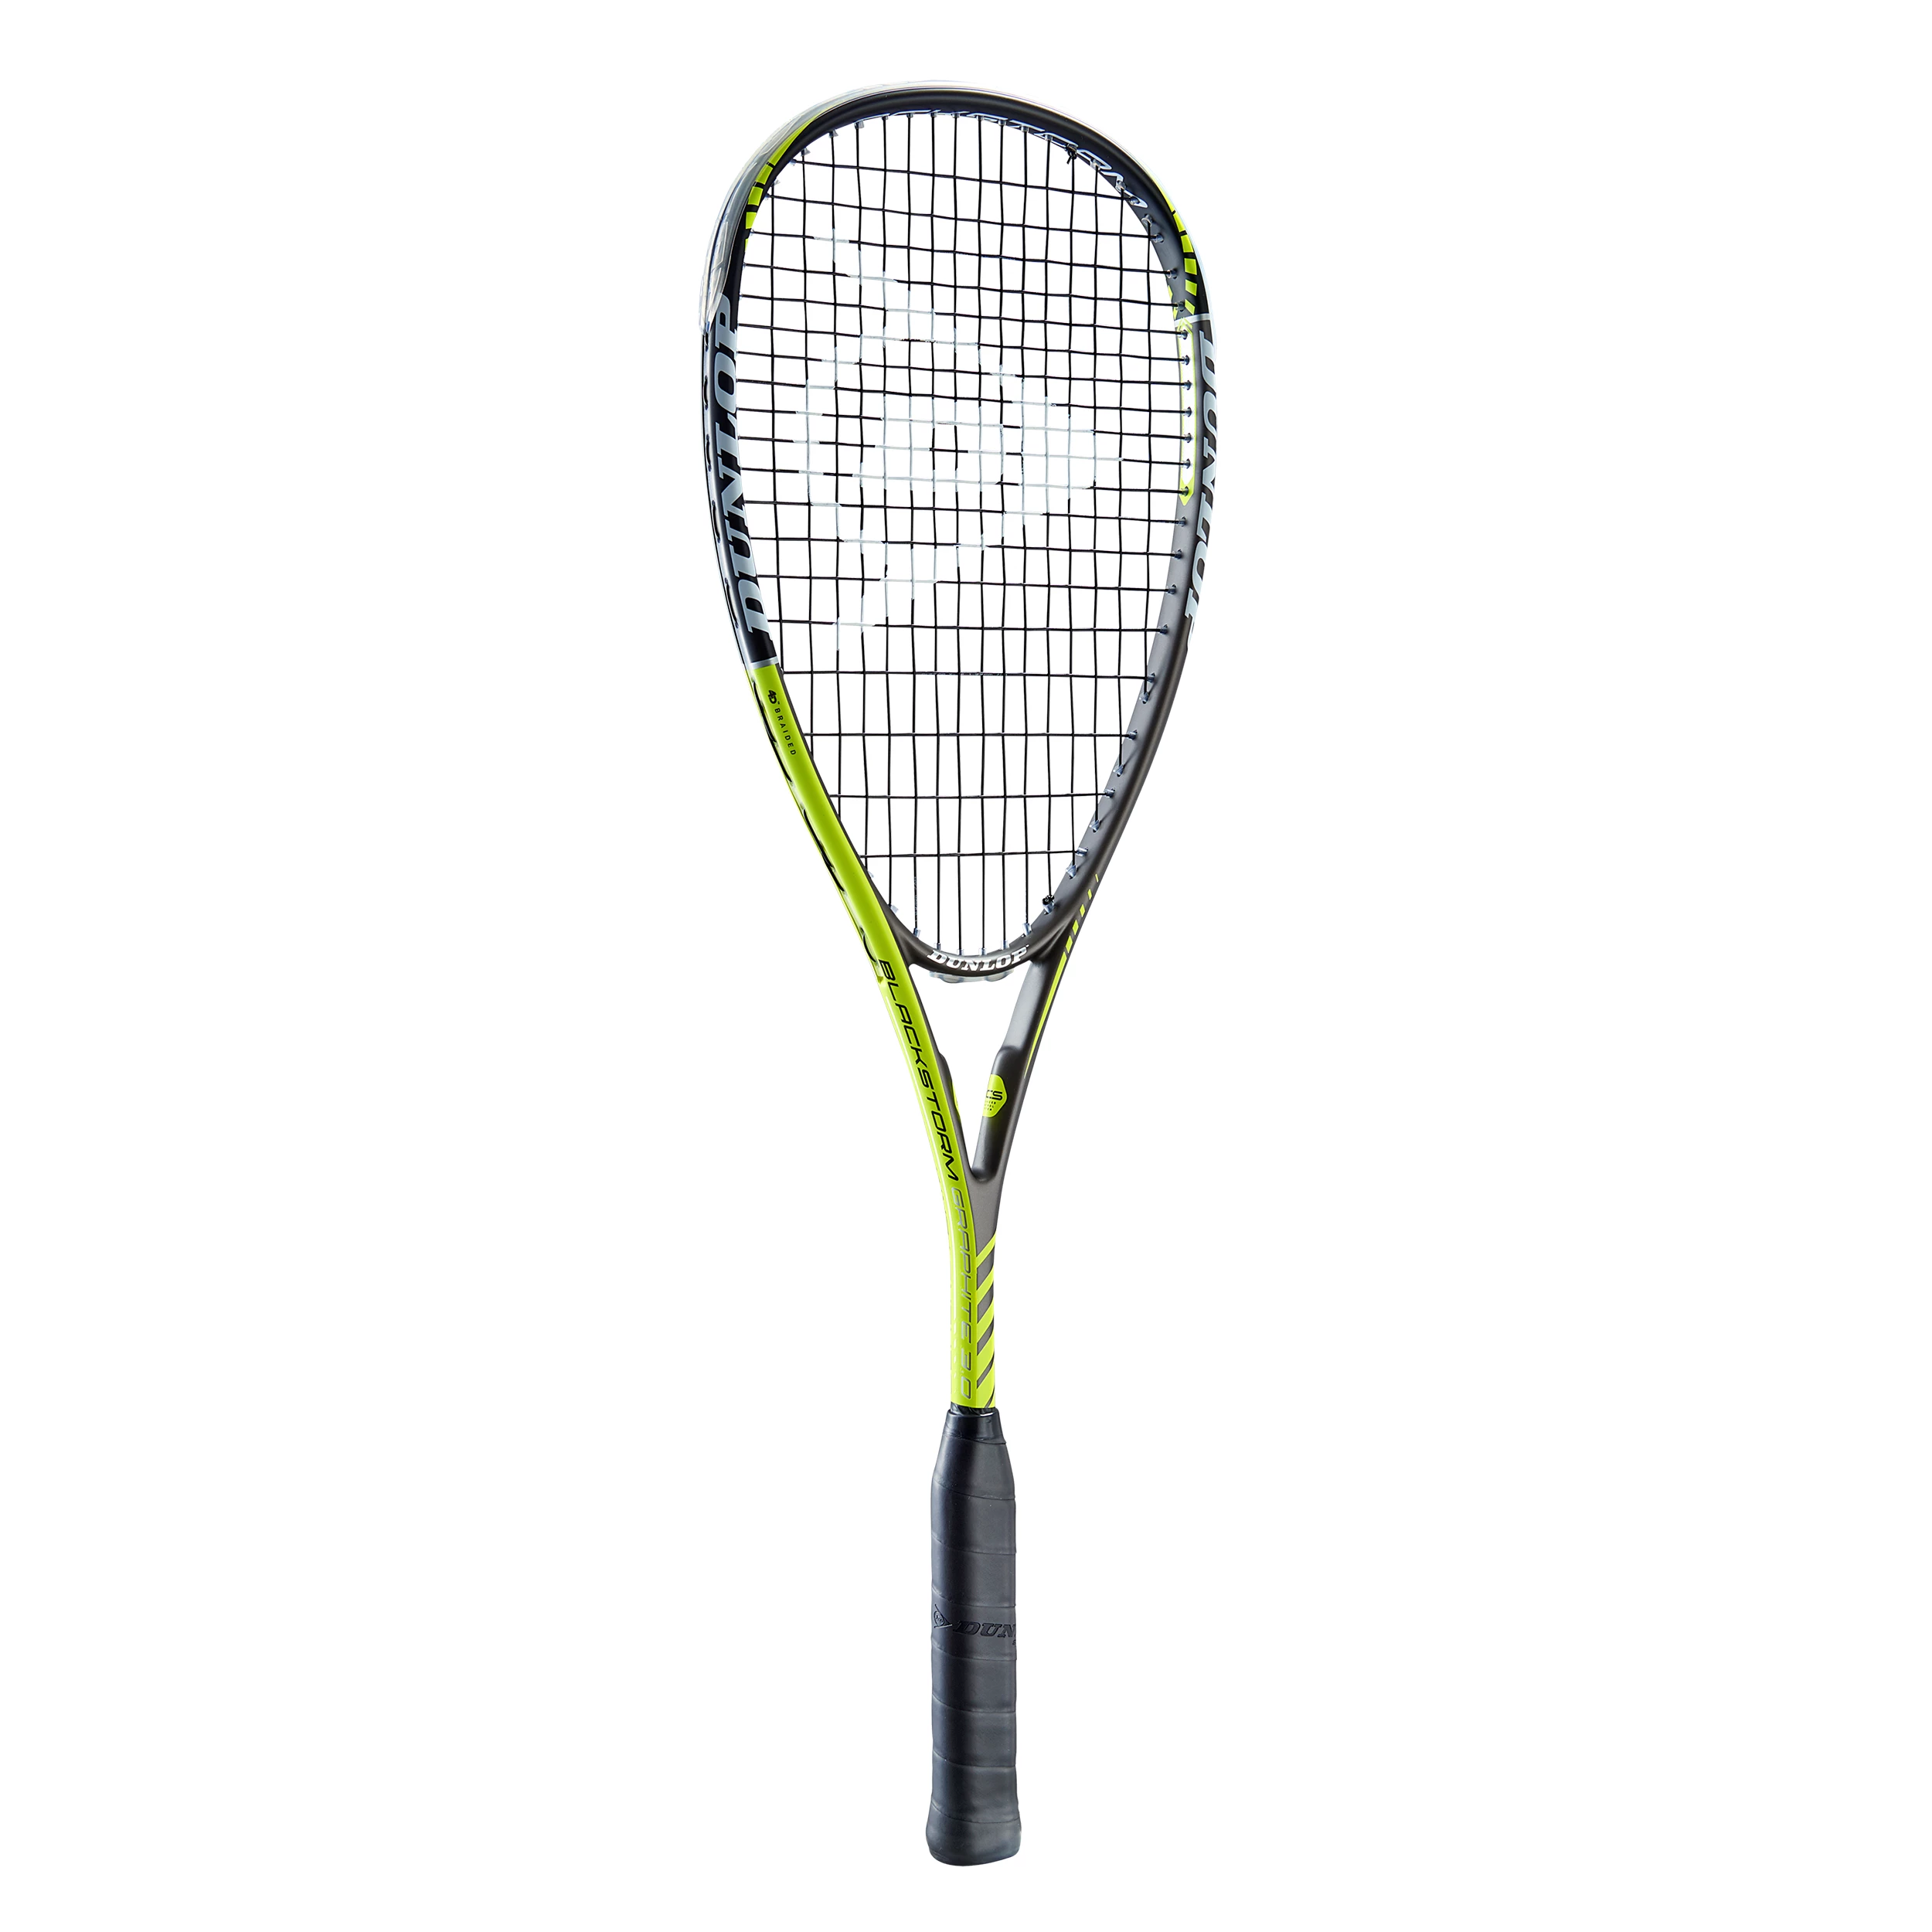 Dunlop Black Storm Gr.3.0 squashracket